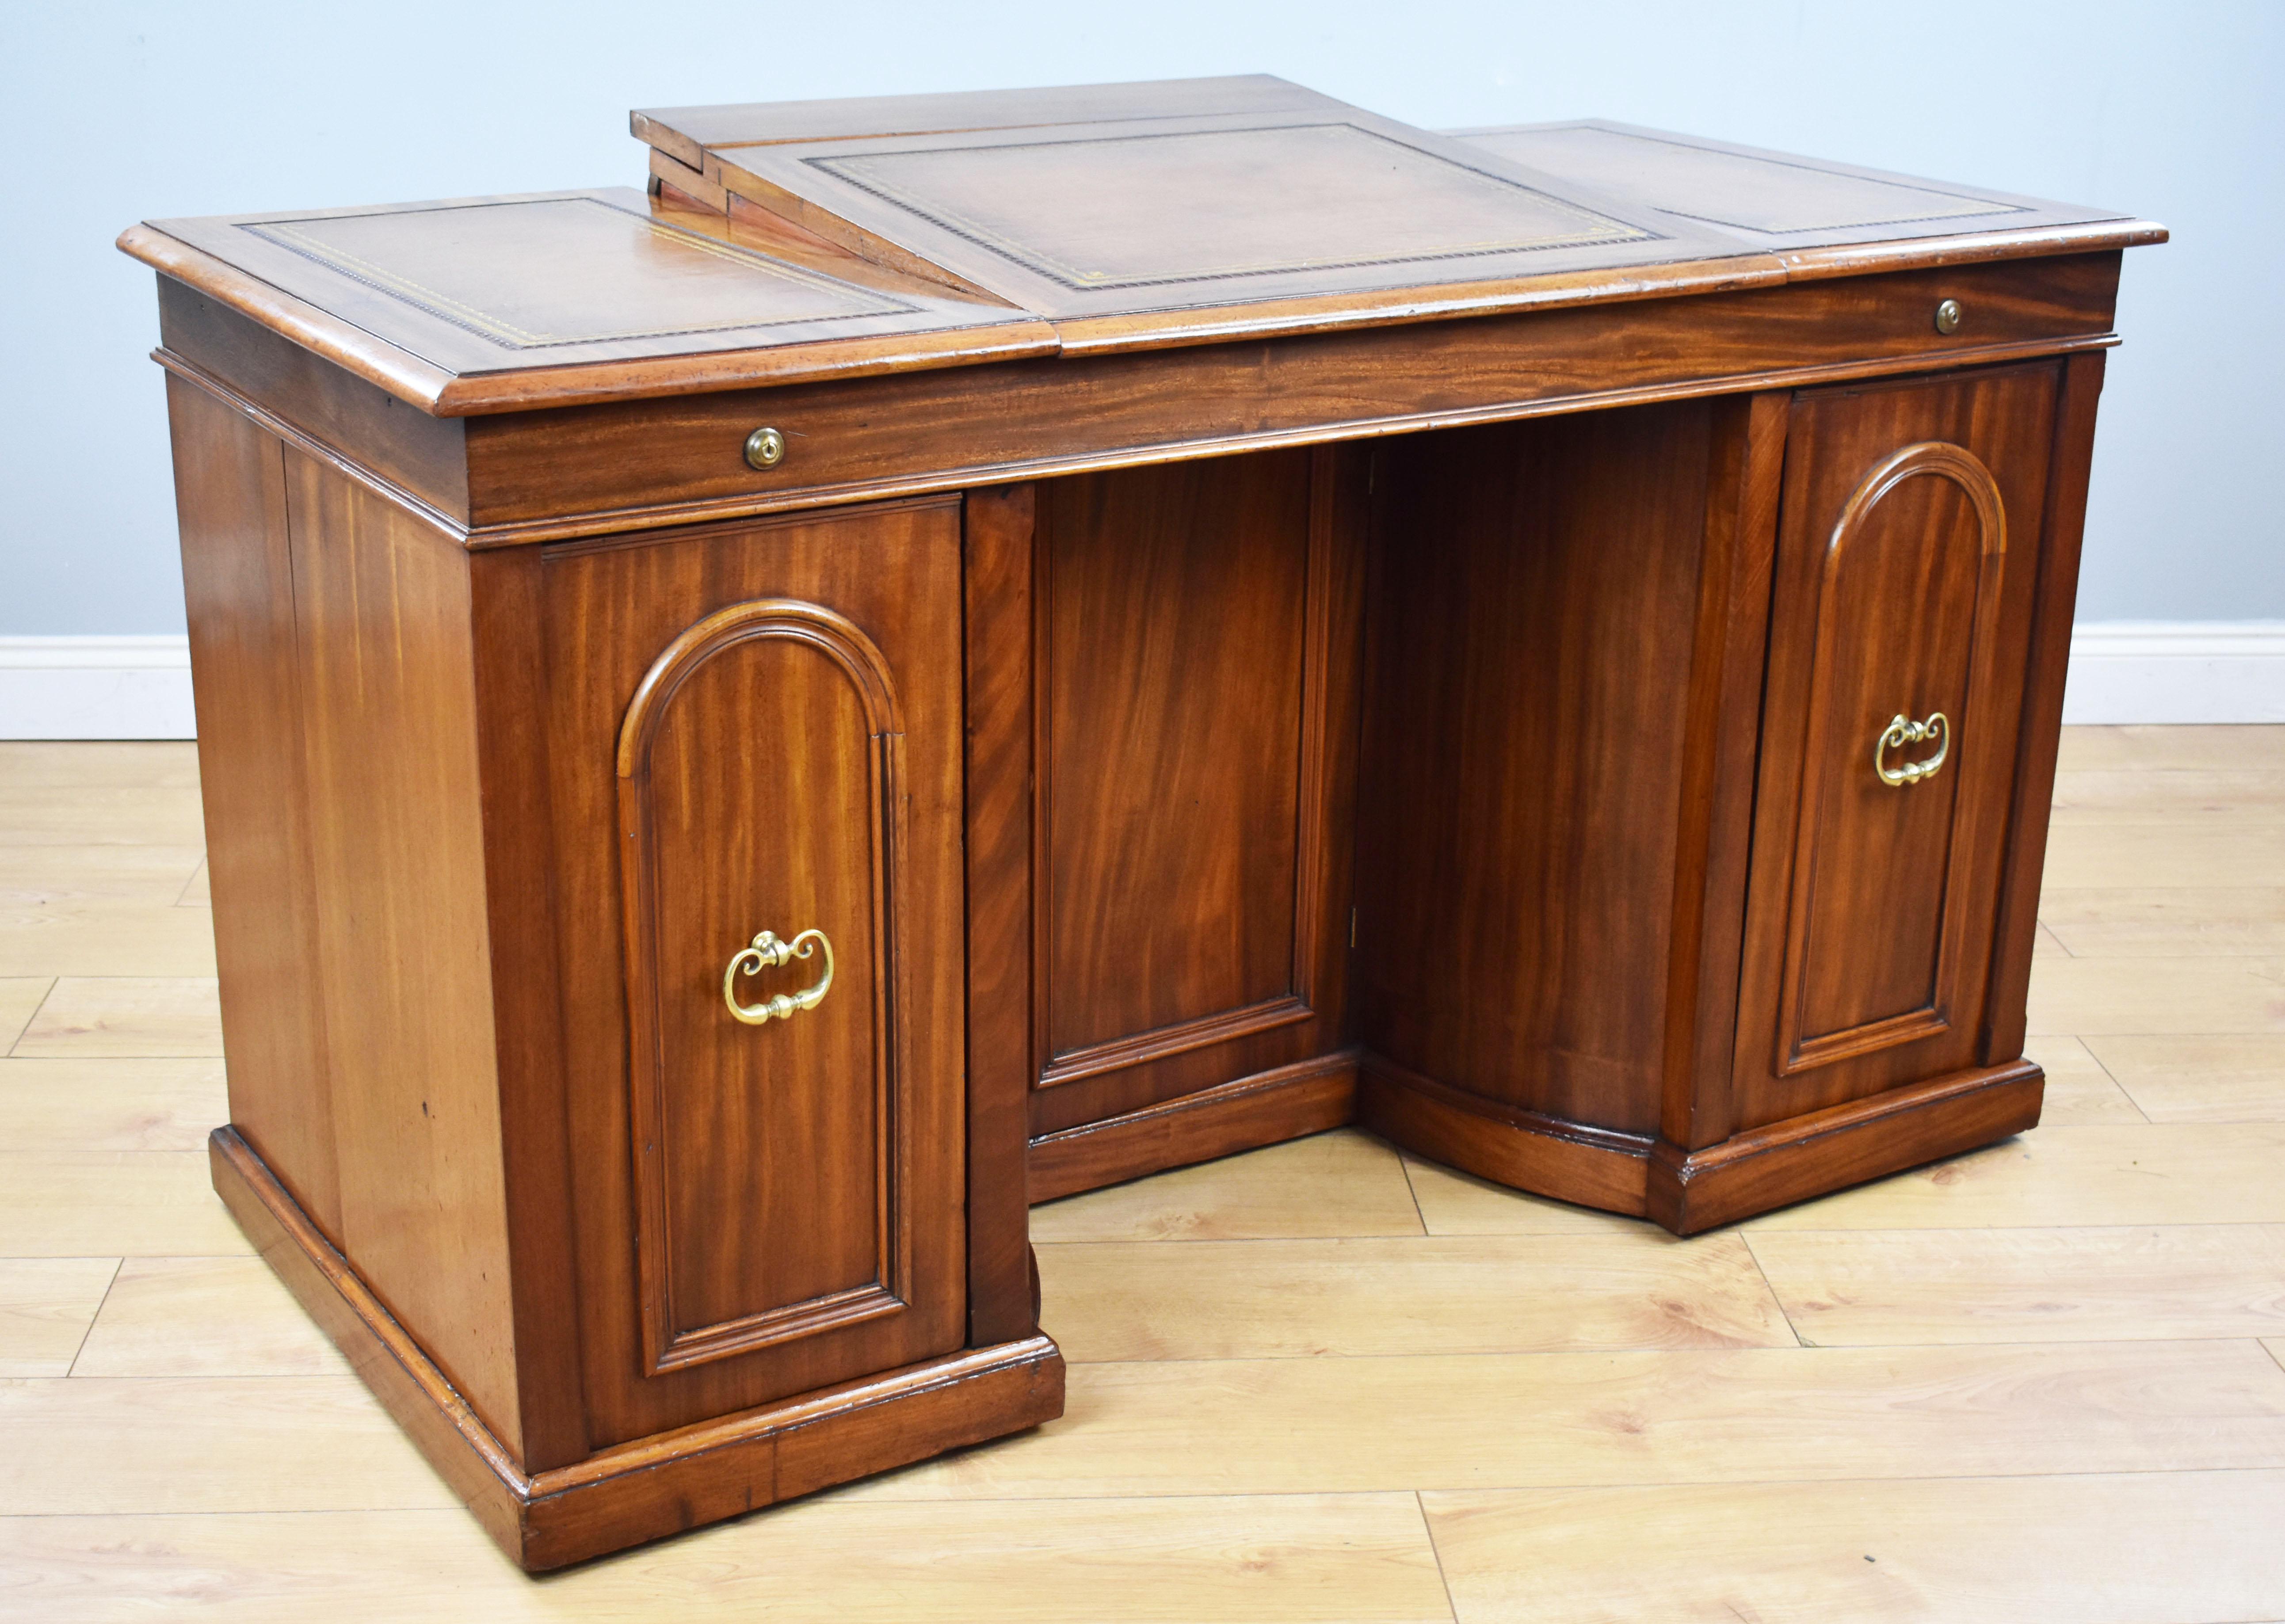 Zum Verkauf steht ein hochwertiger, ungewöhnlicher viktorianischer Mahagoni-Schreibtisch mit Knieloch von Francis und James Smith, Glasgow. Die Oberseite mit drei ledernen Schreibflächen, die jeweils mit Gold- und Blindprägung verziert sind.